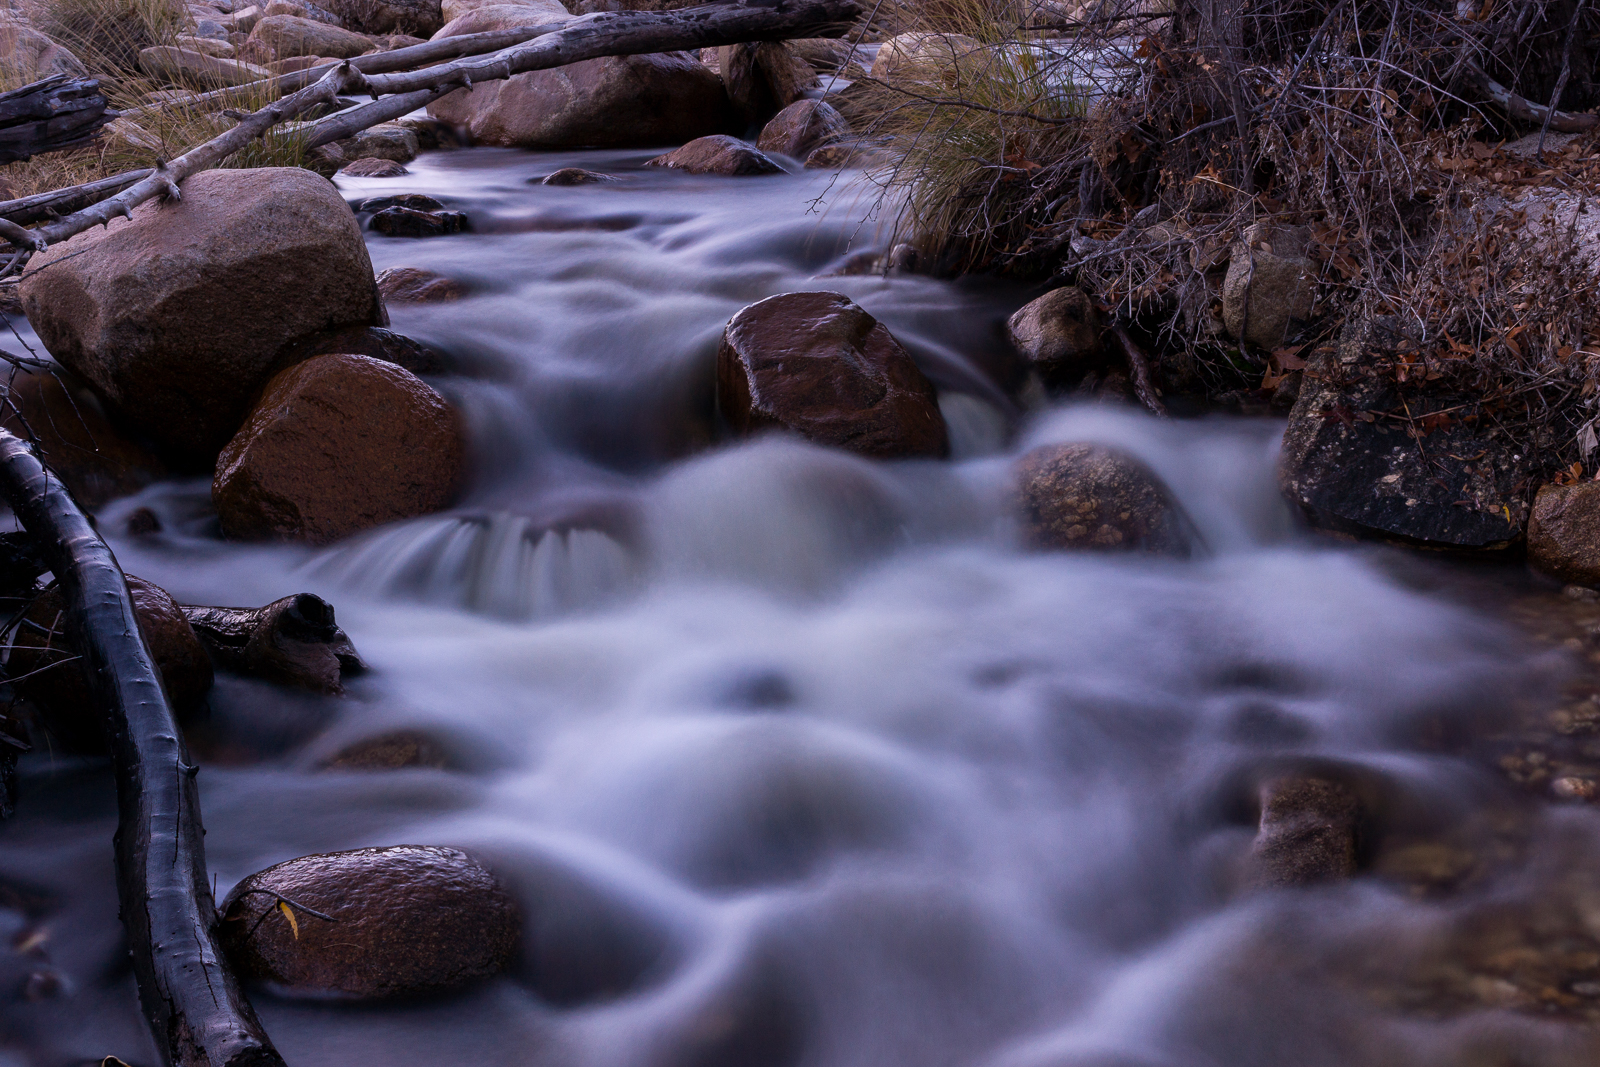 Water flowing in Sabino Canyon. December 2015.